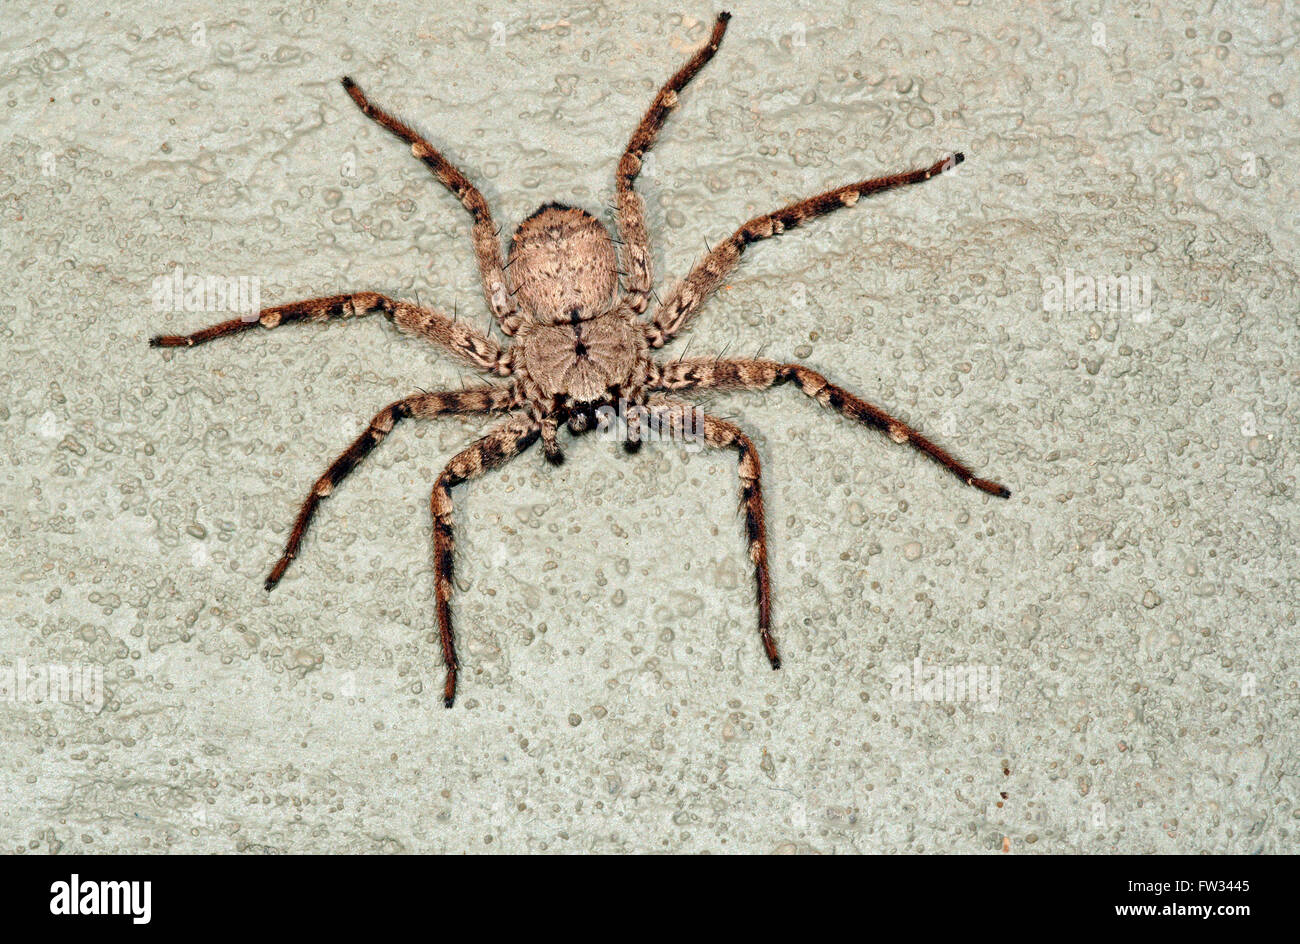 Araignée crabe géant (Heteropoda venatoria), Pantanal, Mato Grosso, Brésil Banque D'Images